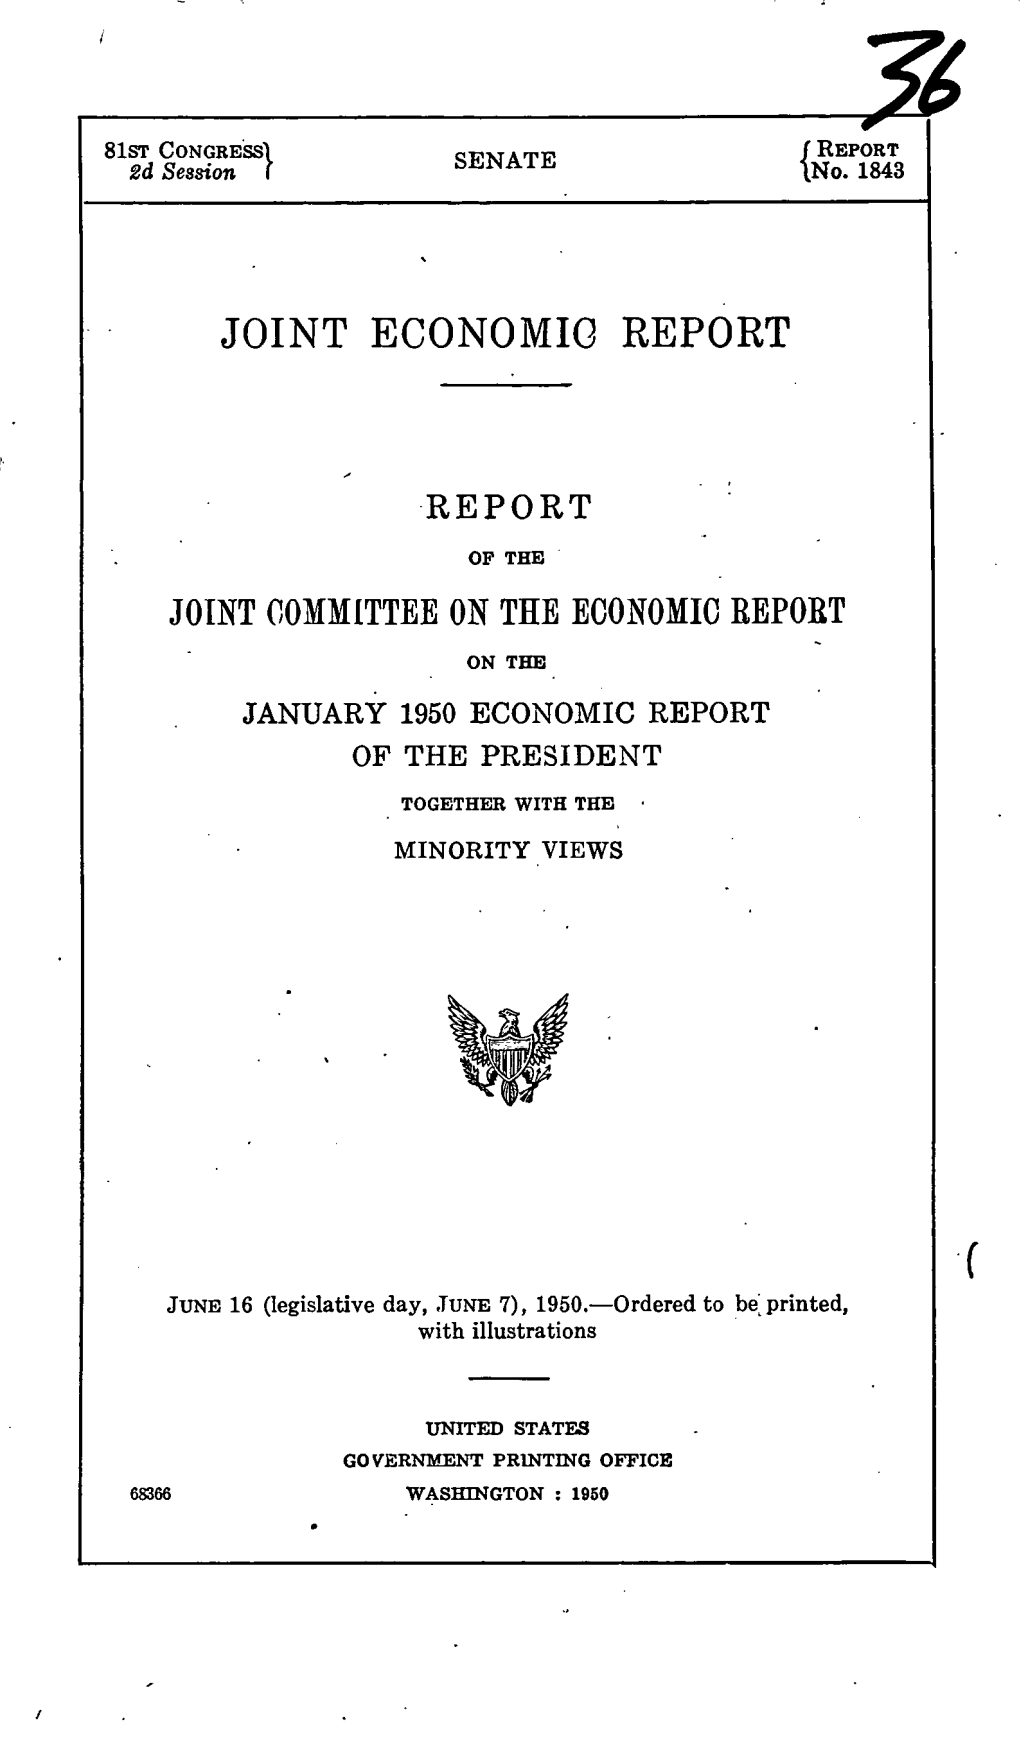 Joint Economic Report